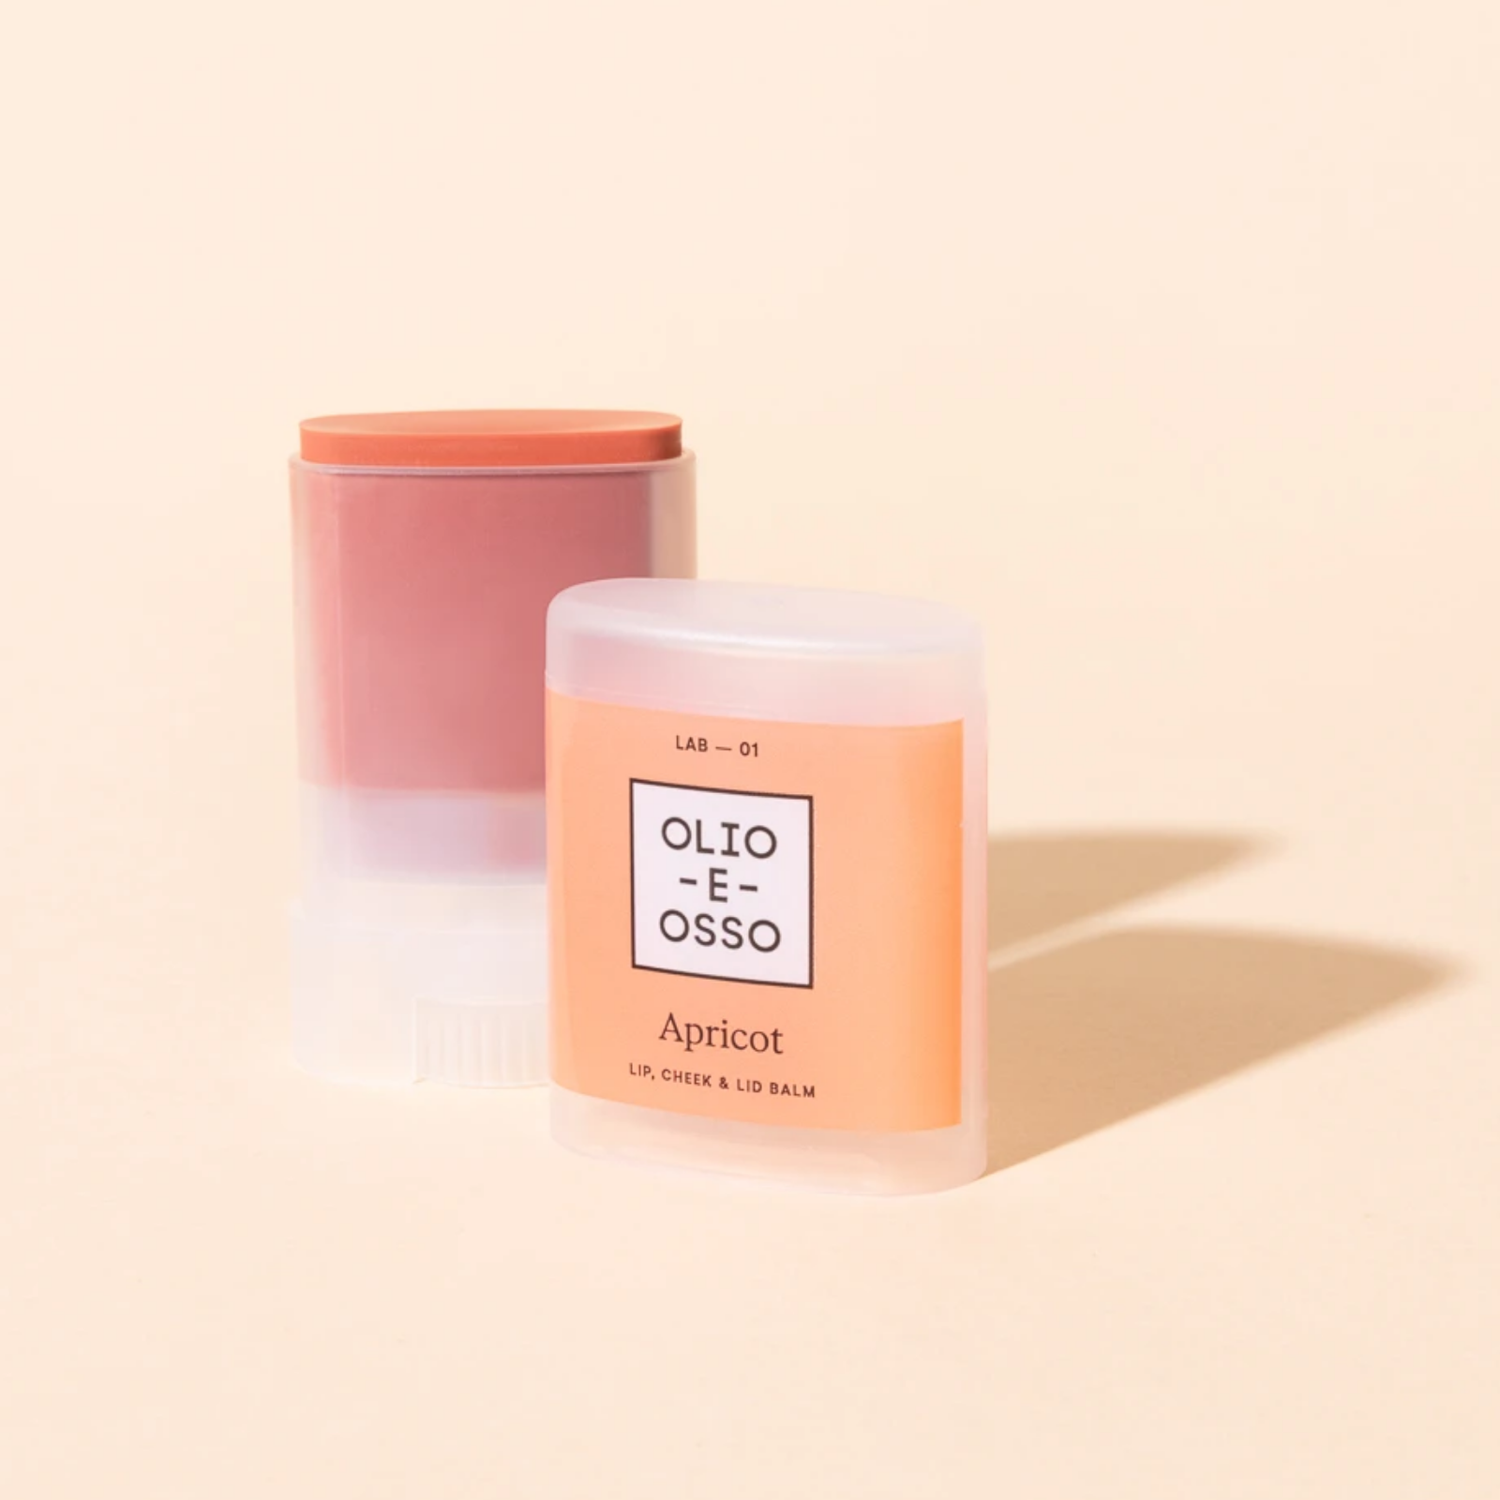 OLIO E OSSO Balm Lab — 01 Apricot